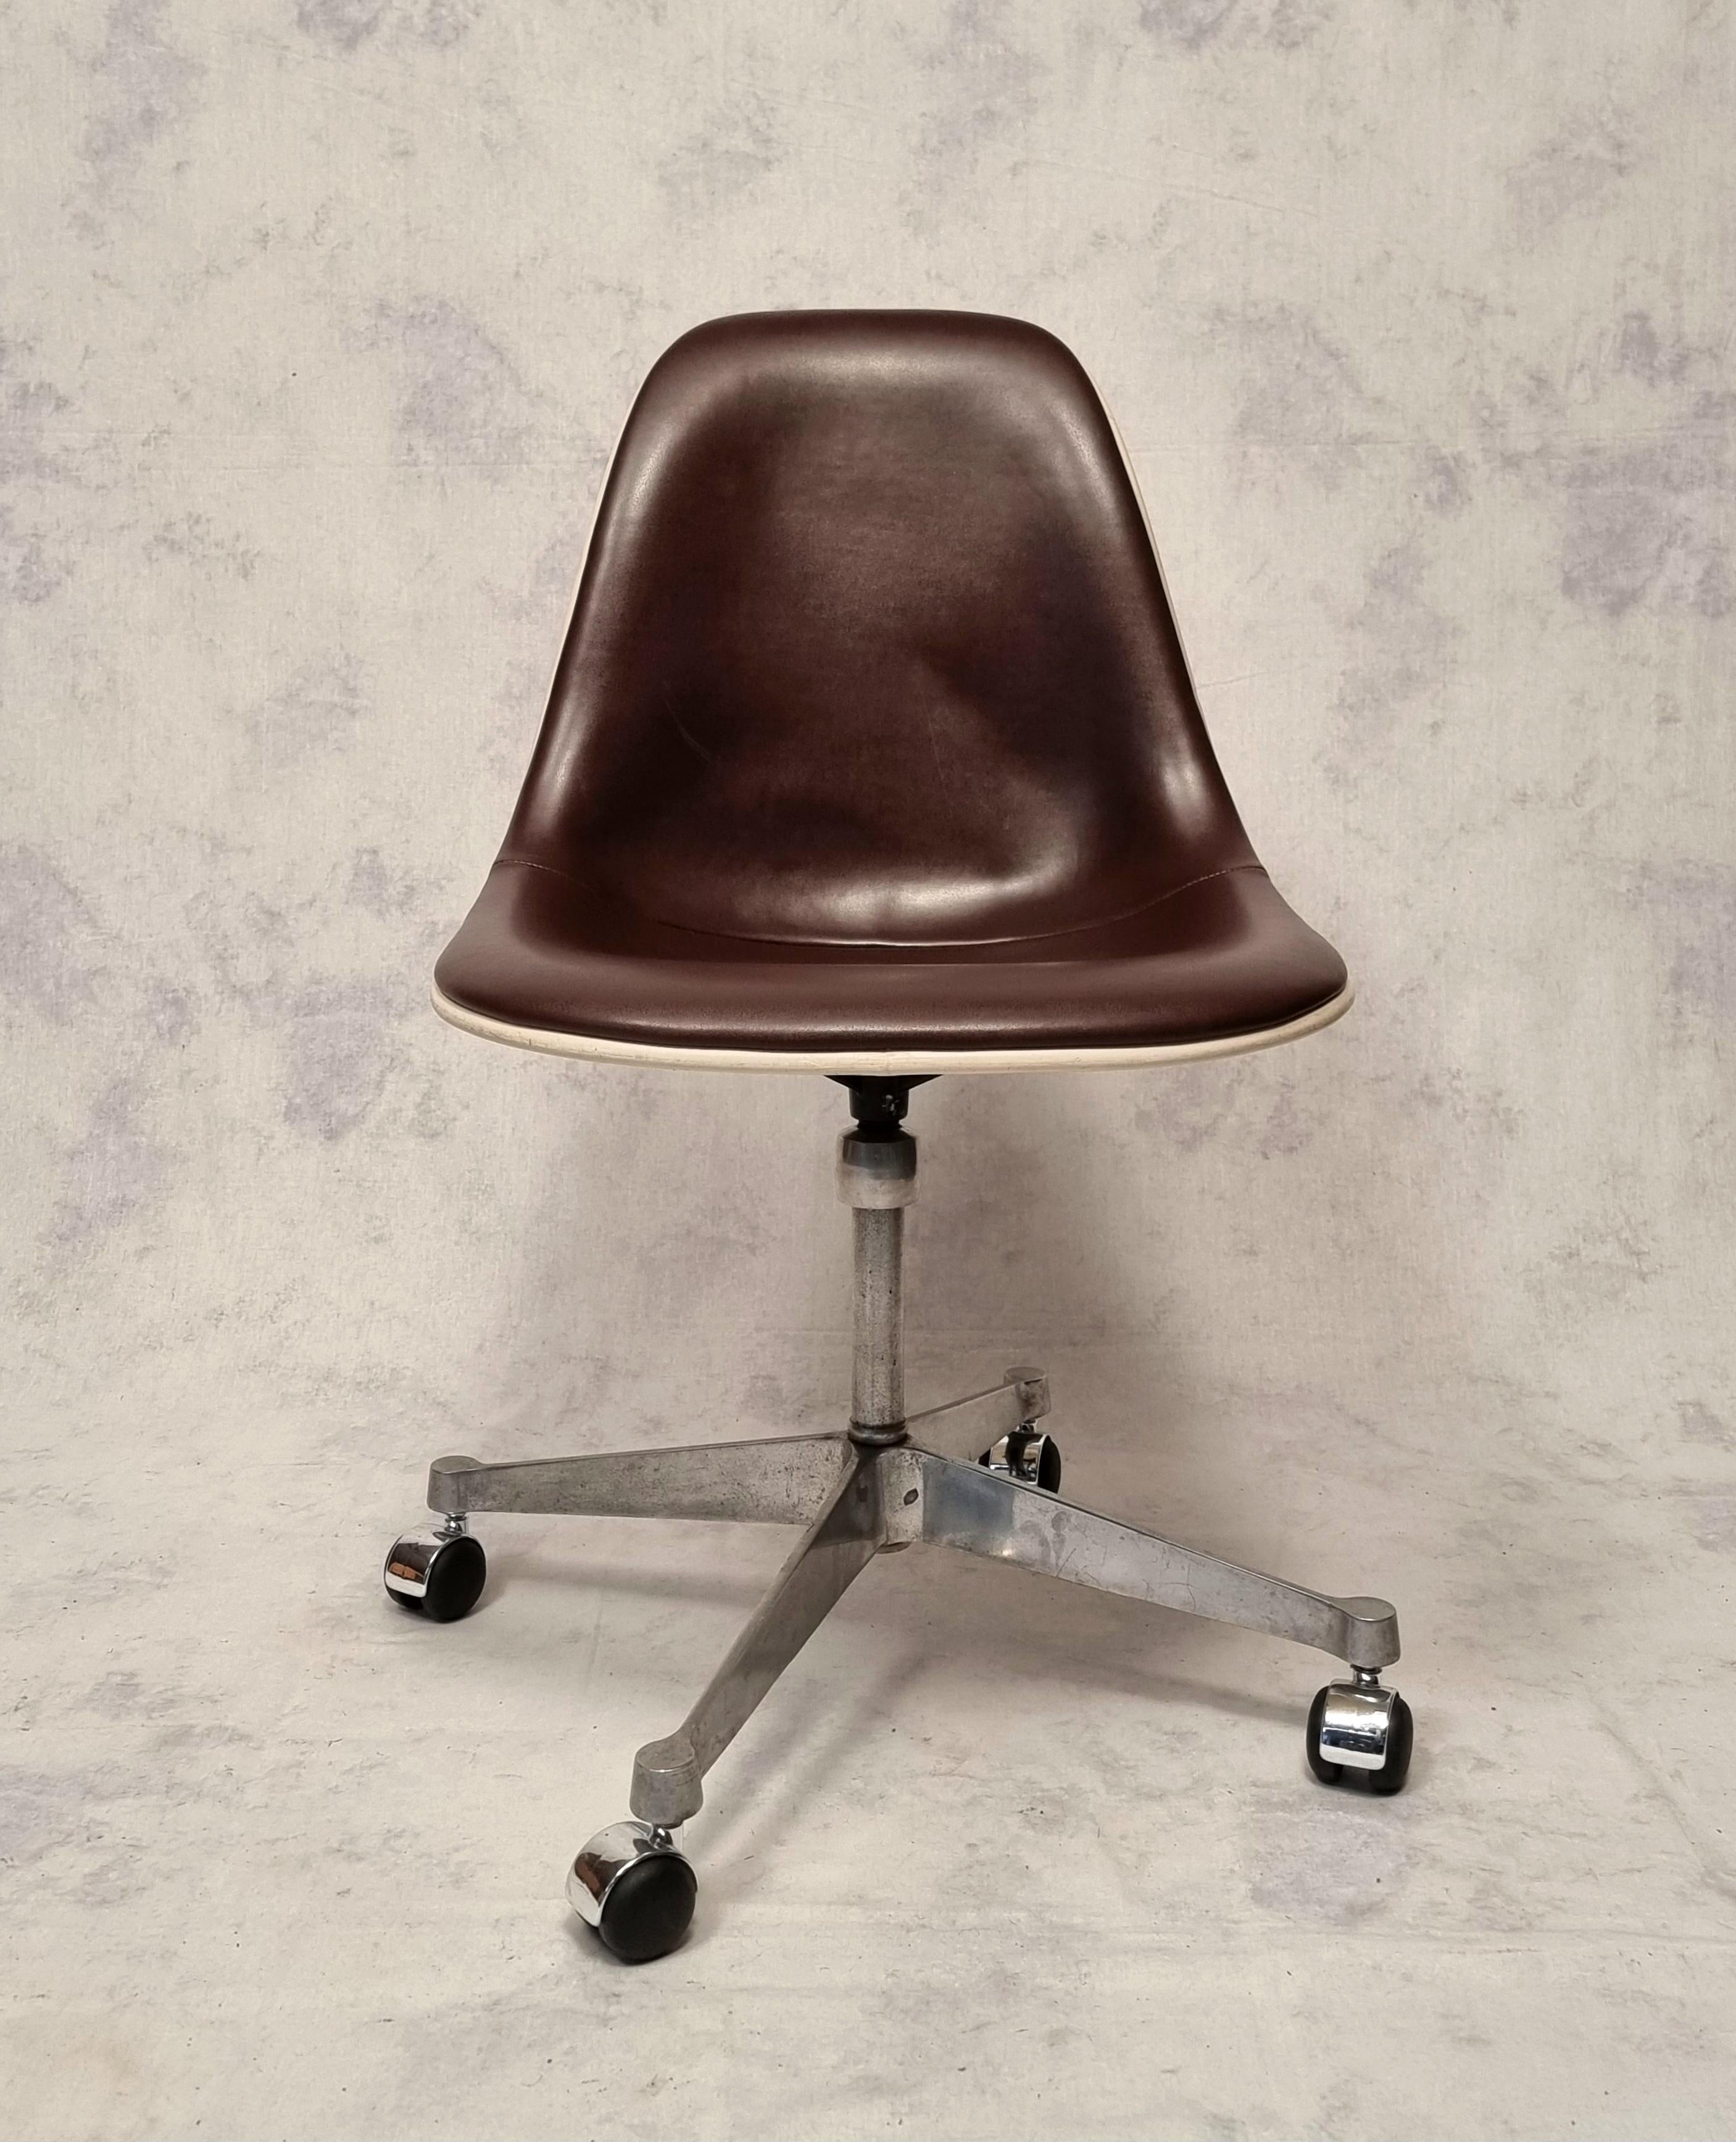 Chaise de bureau des designers américains Charles et Ray Eames produite par Herman Miller dans les années 1960. Charles et Ray Eames comptent parmi les designers les plus emblématiques de l'histoire, en créant notamment leur chaise longue. Modèle